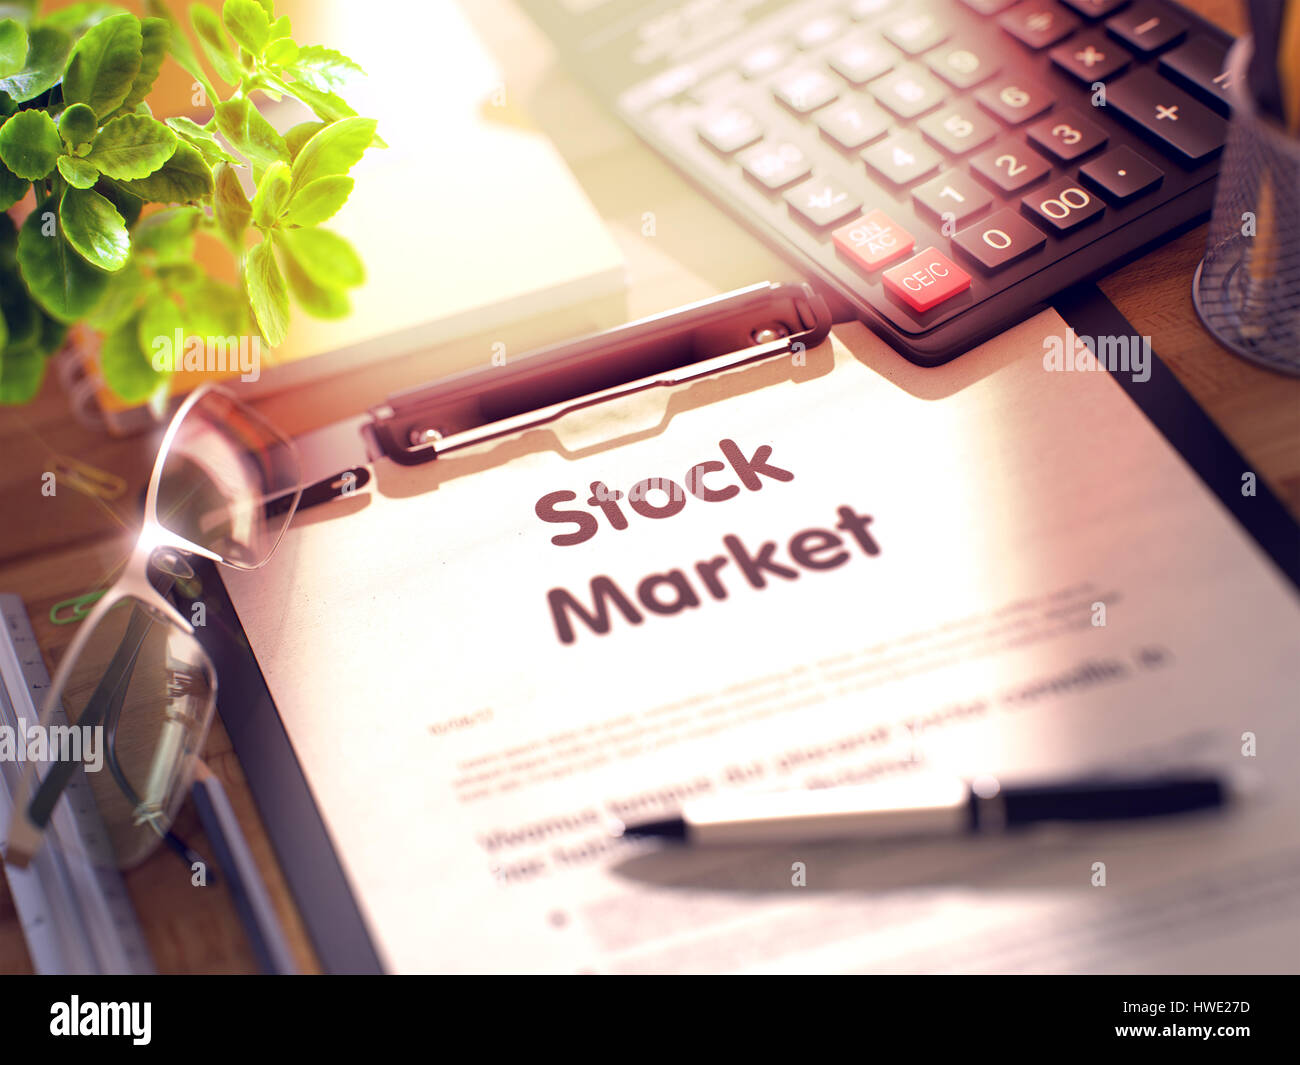 Presse-papiers en Stock Market Concept. 3d. Banque D'Images